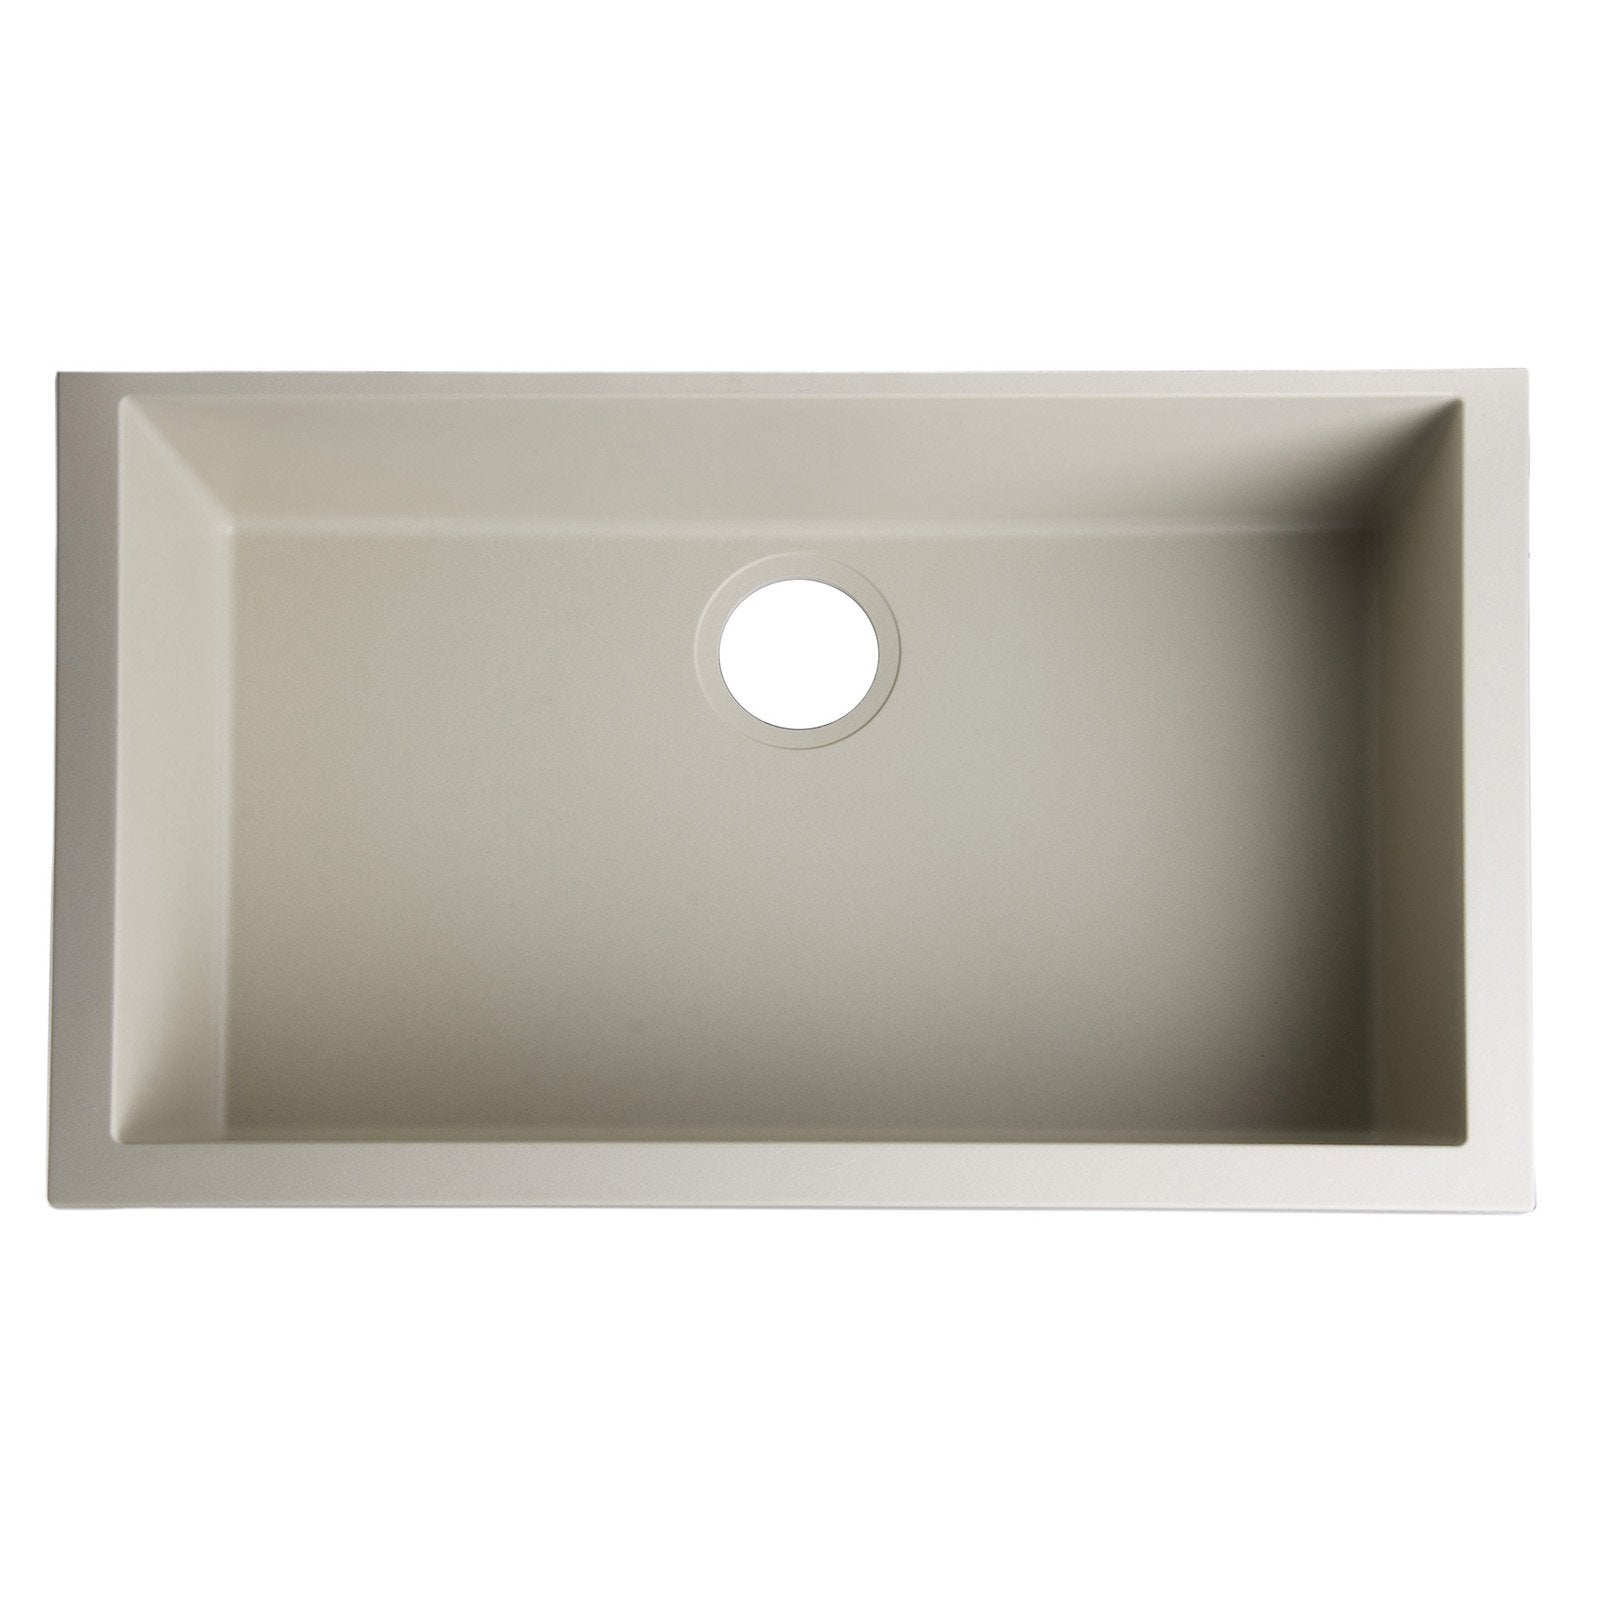 ALFI, ALFI AB3020UM-B Biscuit 30" Undermount Single Bowl Granite Composite Sink